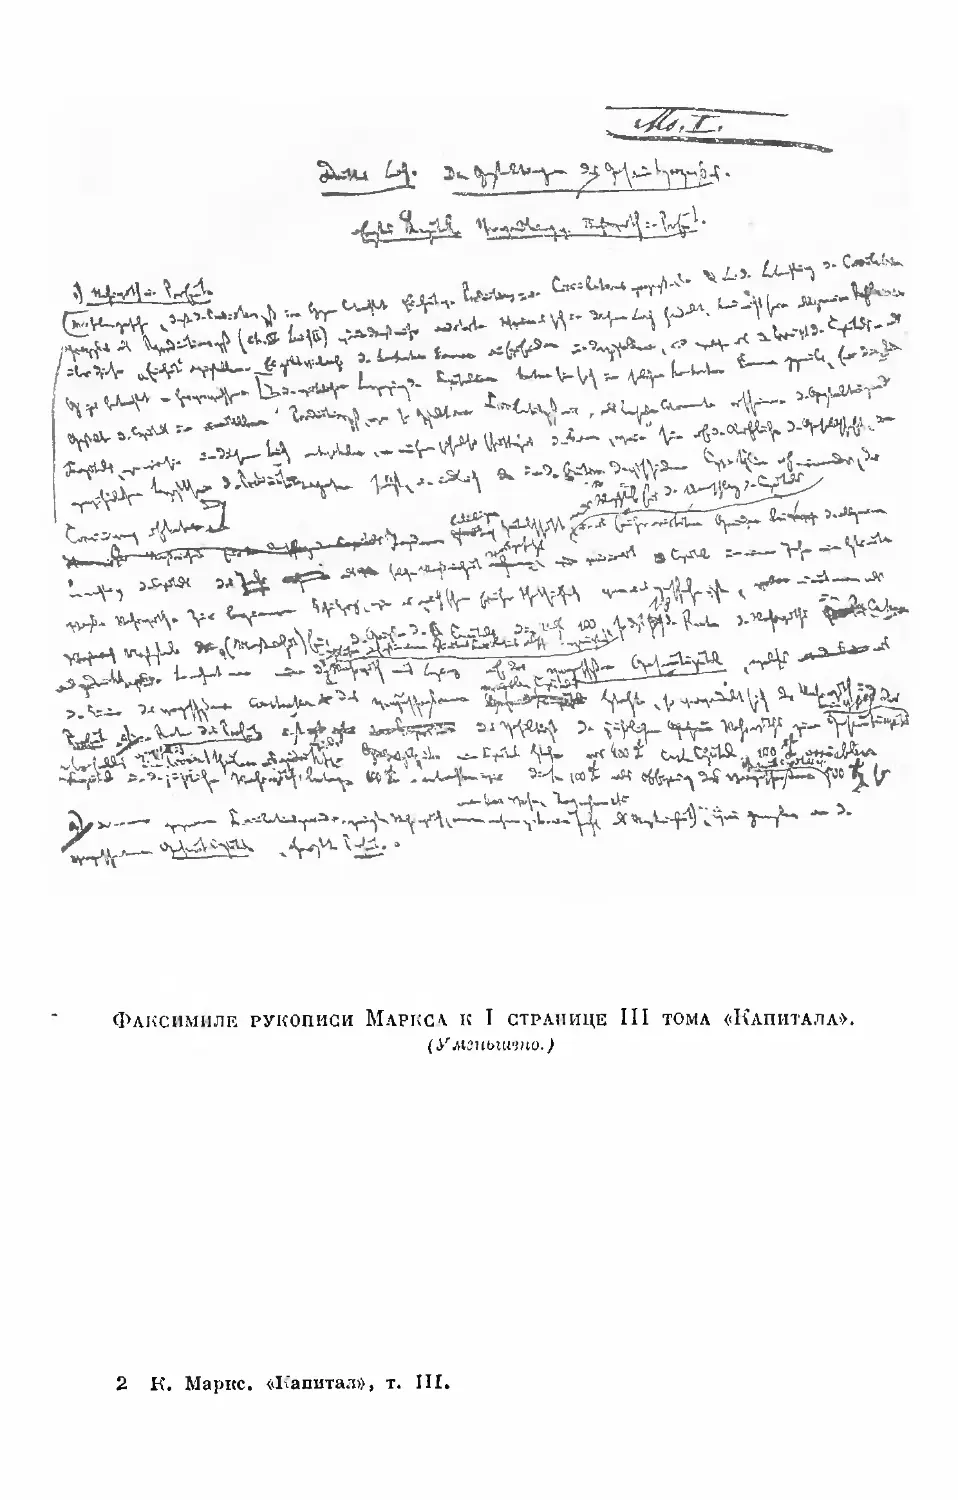 Факсимиле рукописи Маркса к I странице III тома «Капитала».